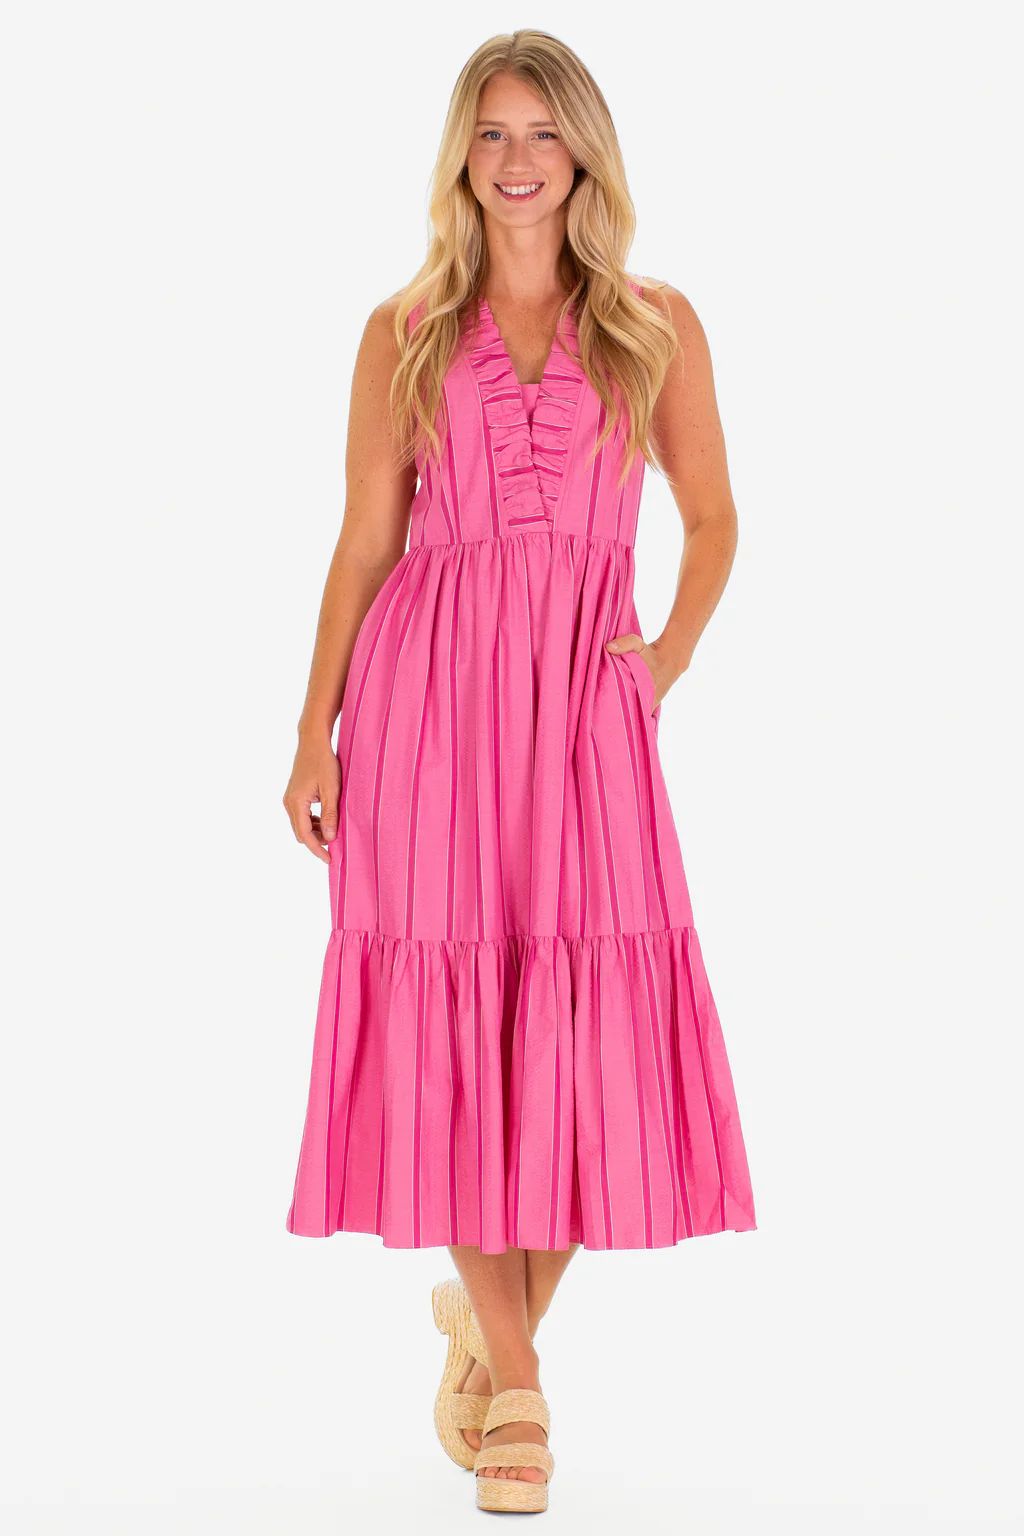 The Delphine Dress in Candy Pink Seersucker | Duffield Lane